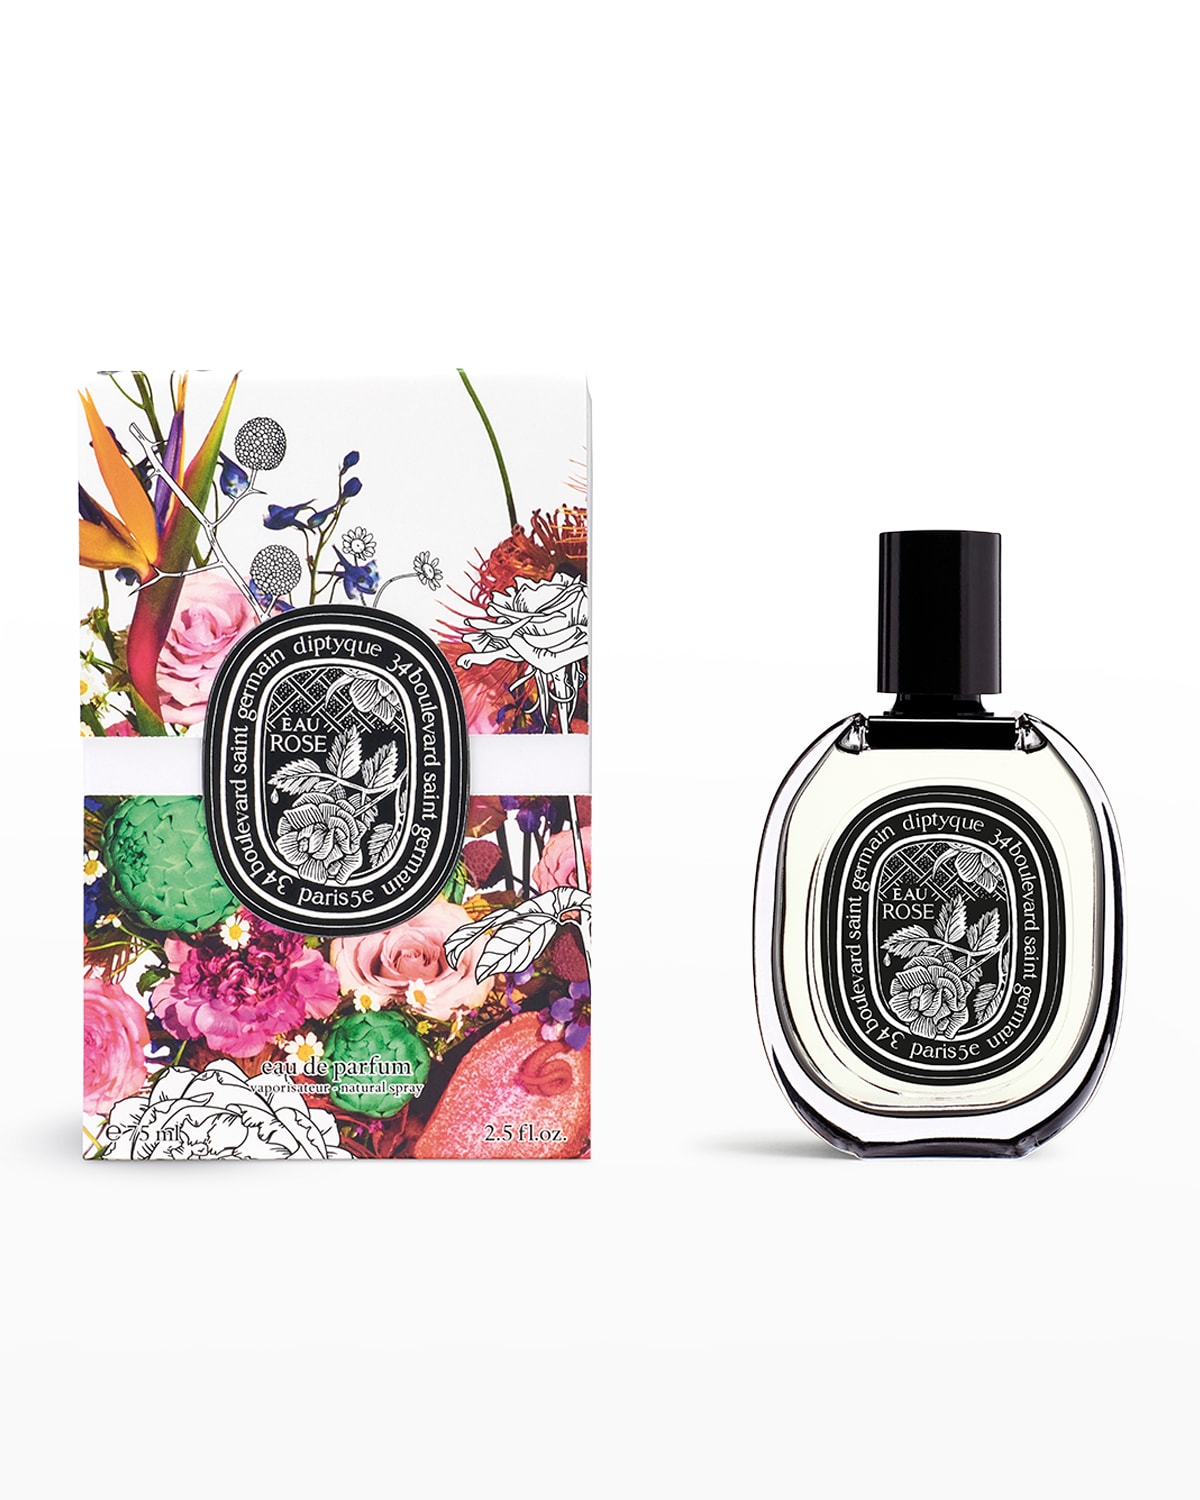 Diptyque 2.5 oz. Eau Rose Eau de Parfum - Limited Edition Packaging